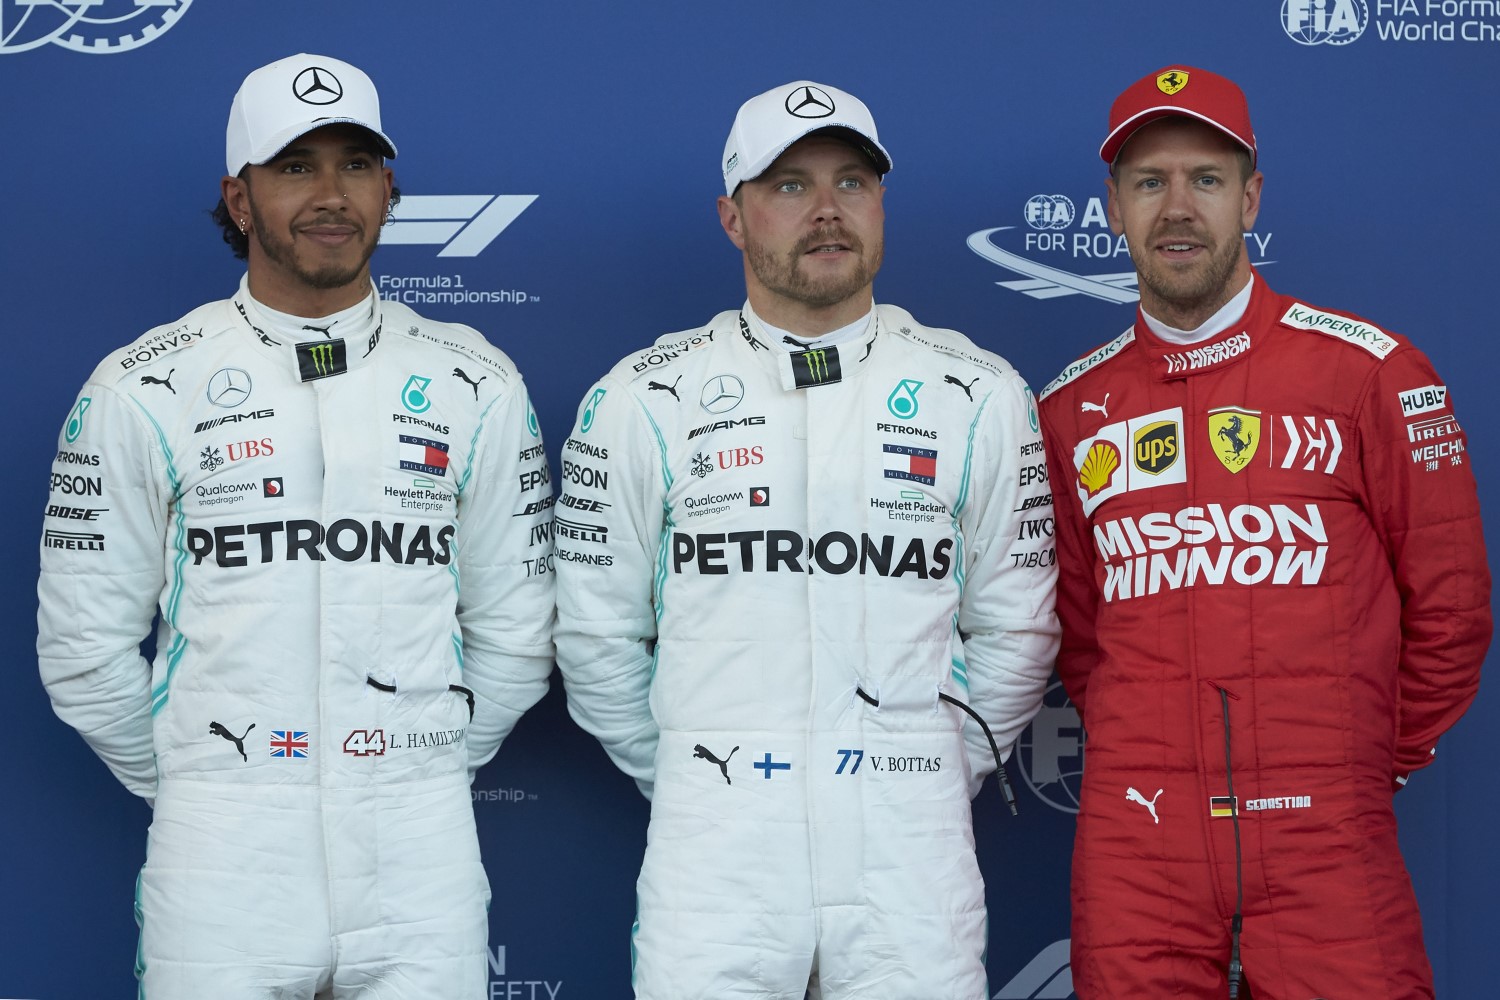 From left, Hamilton, Bottas and Vettel